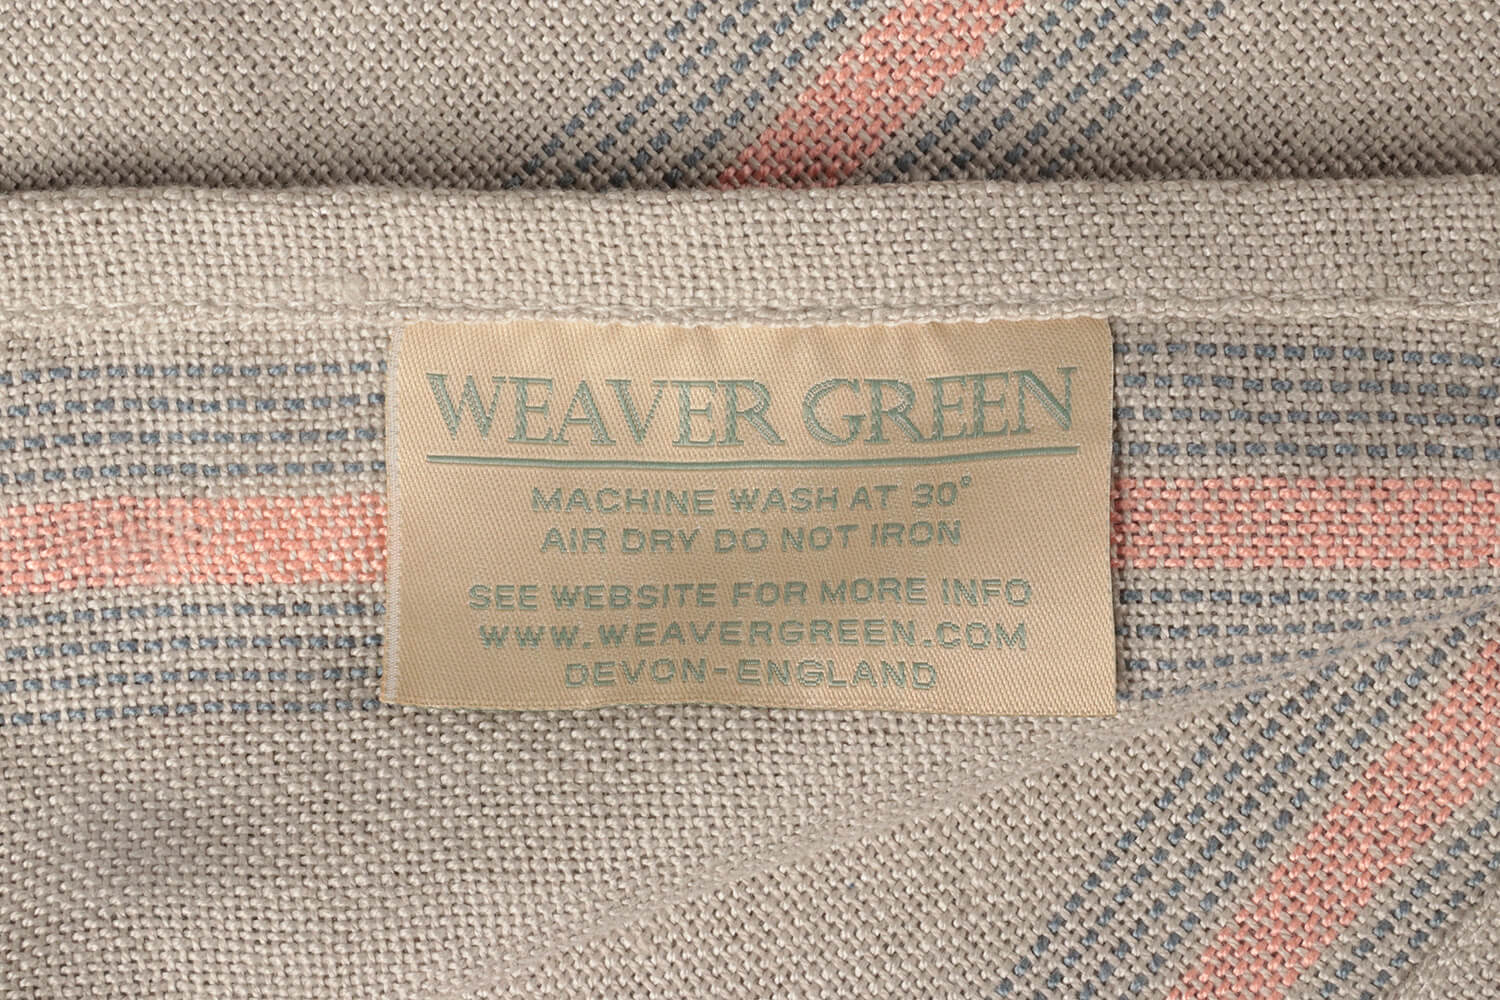 Weaver green plaid-Recycled-Linnen-Baneni-Beige-roze-wollen-dekentje